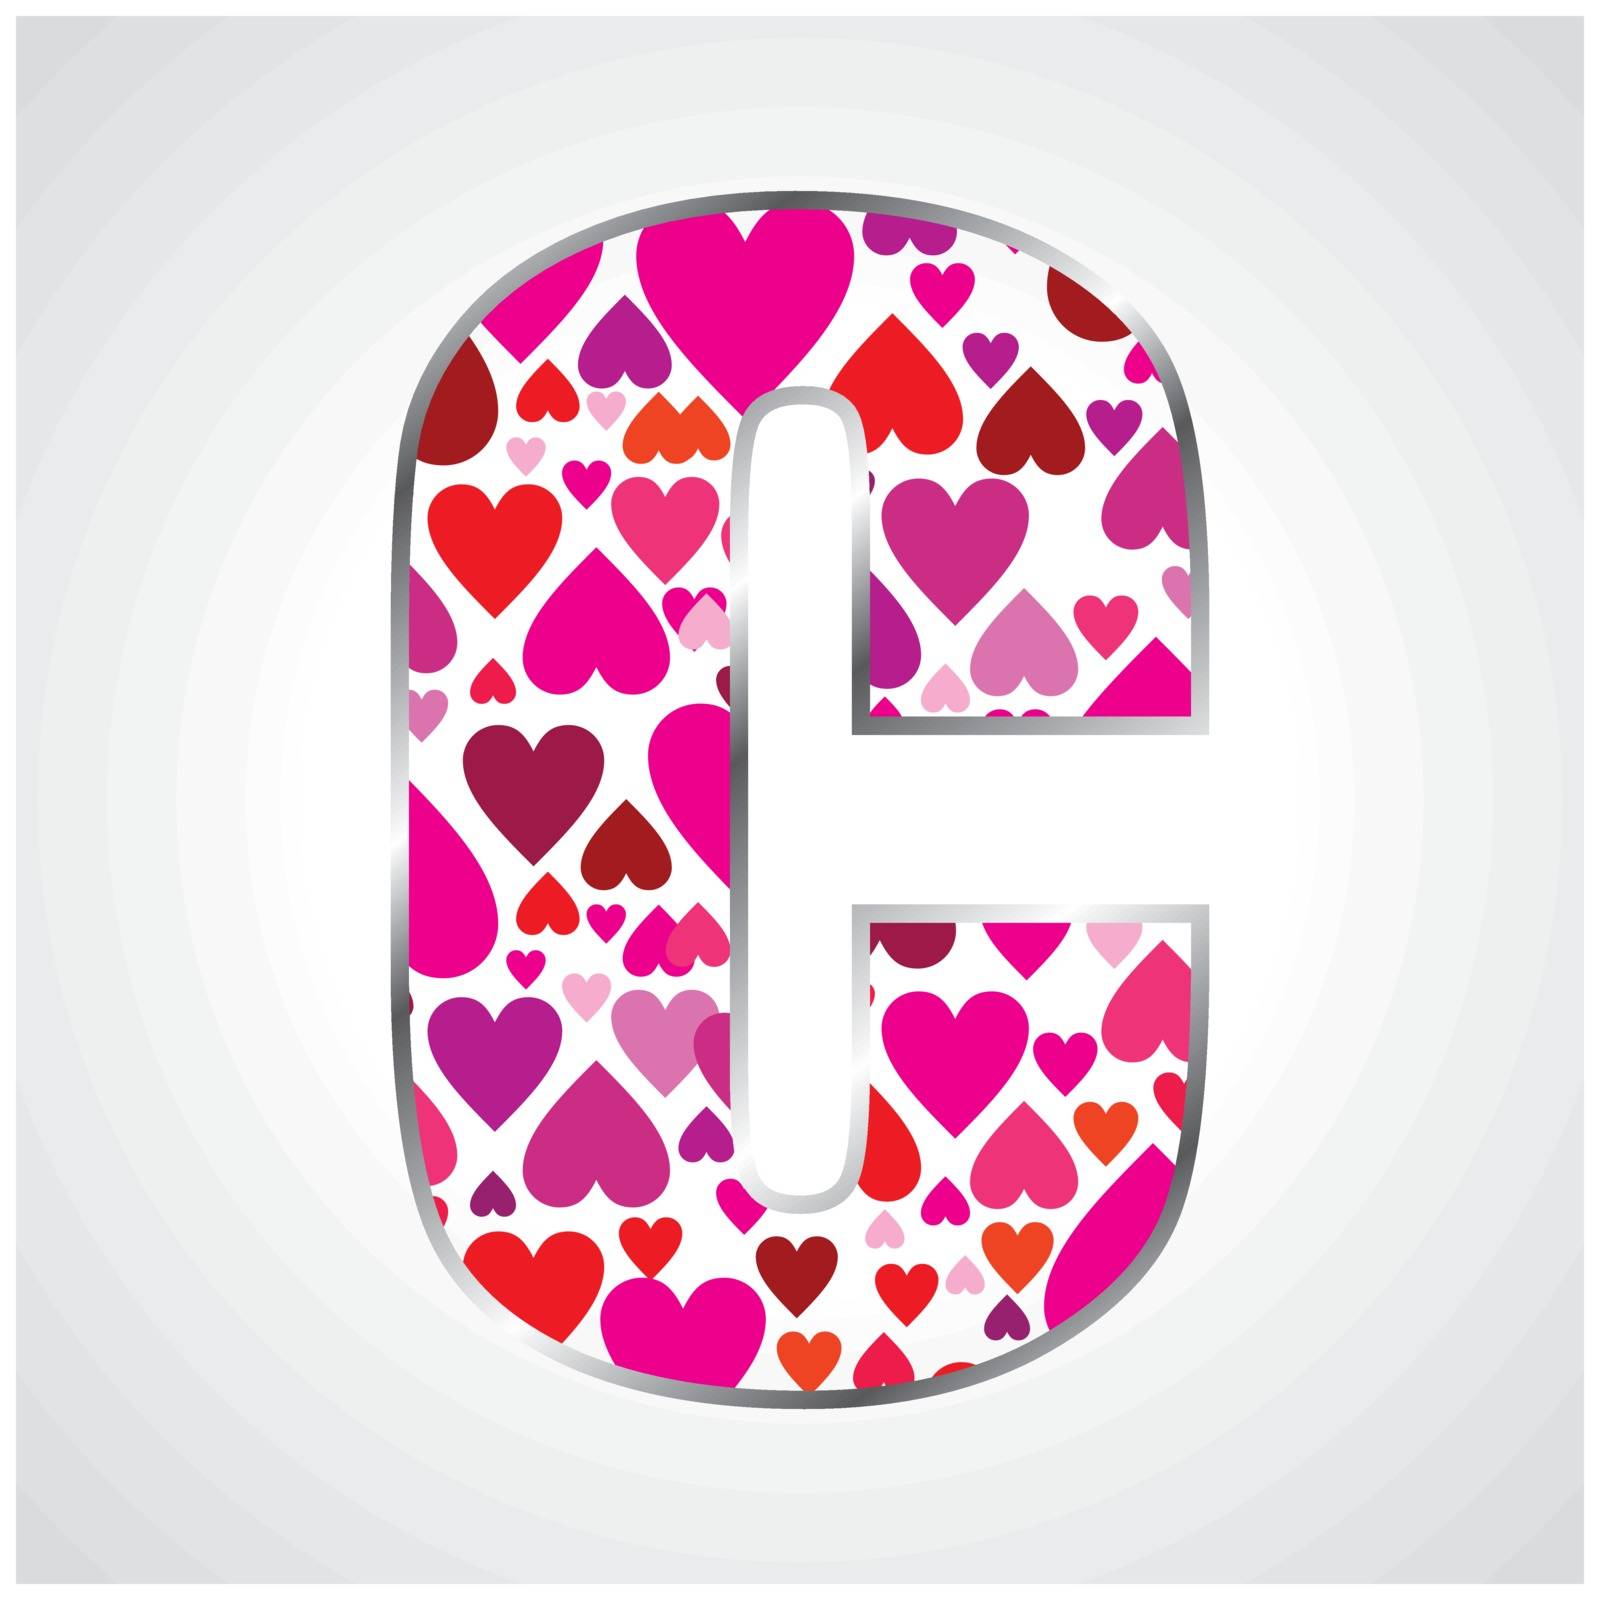 Alphabet of hearts by Crownaart